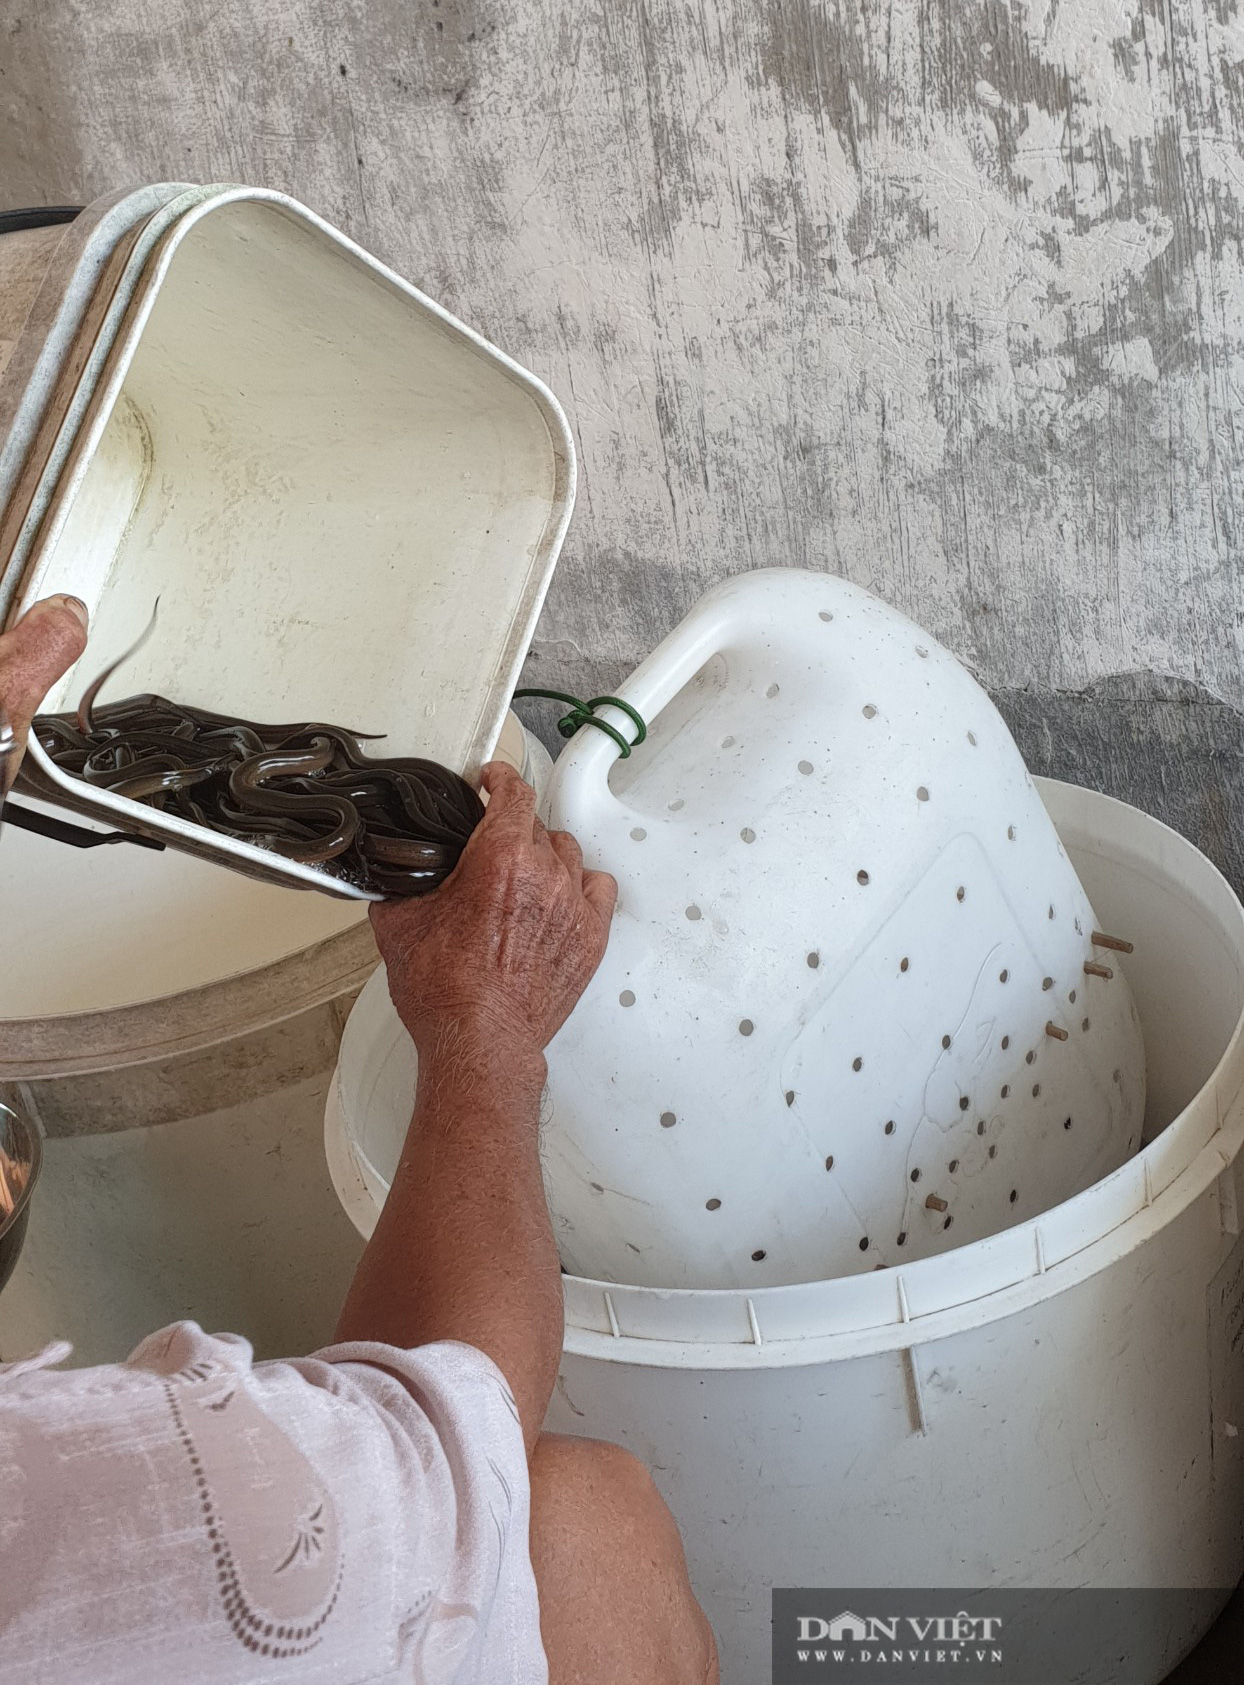 Lão nông nuôi lươn trong can nhựa “độc” nhất miền Tây: Chỉ tuyệt chiêu dưỡng lươn đồng bị chích điện không bị chết - Ảnh 3.